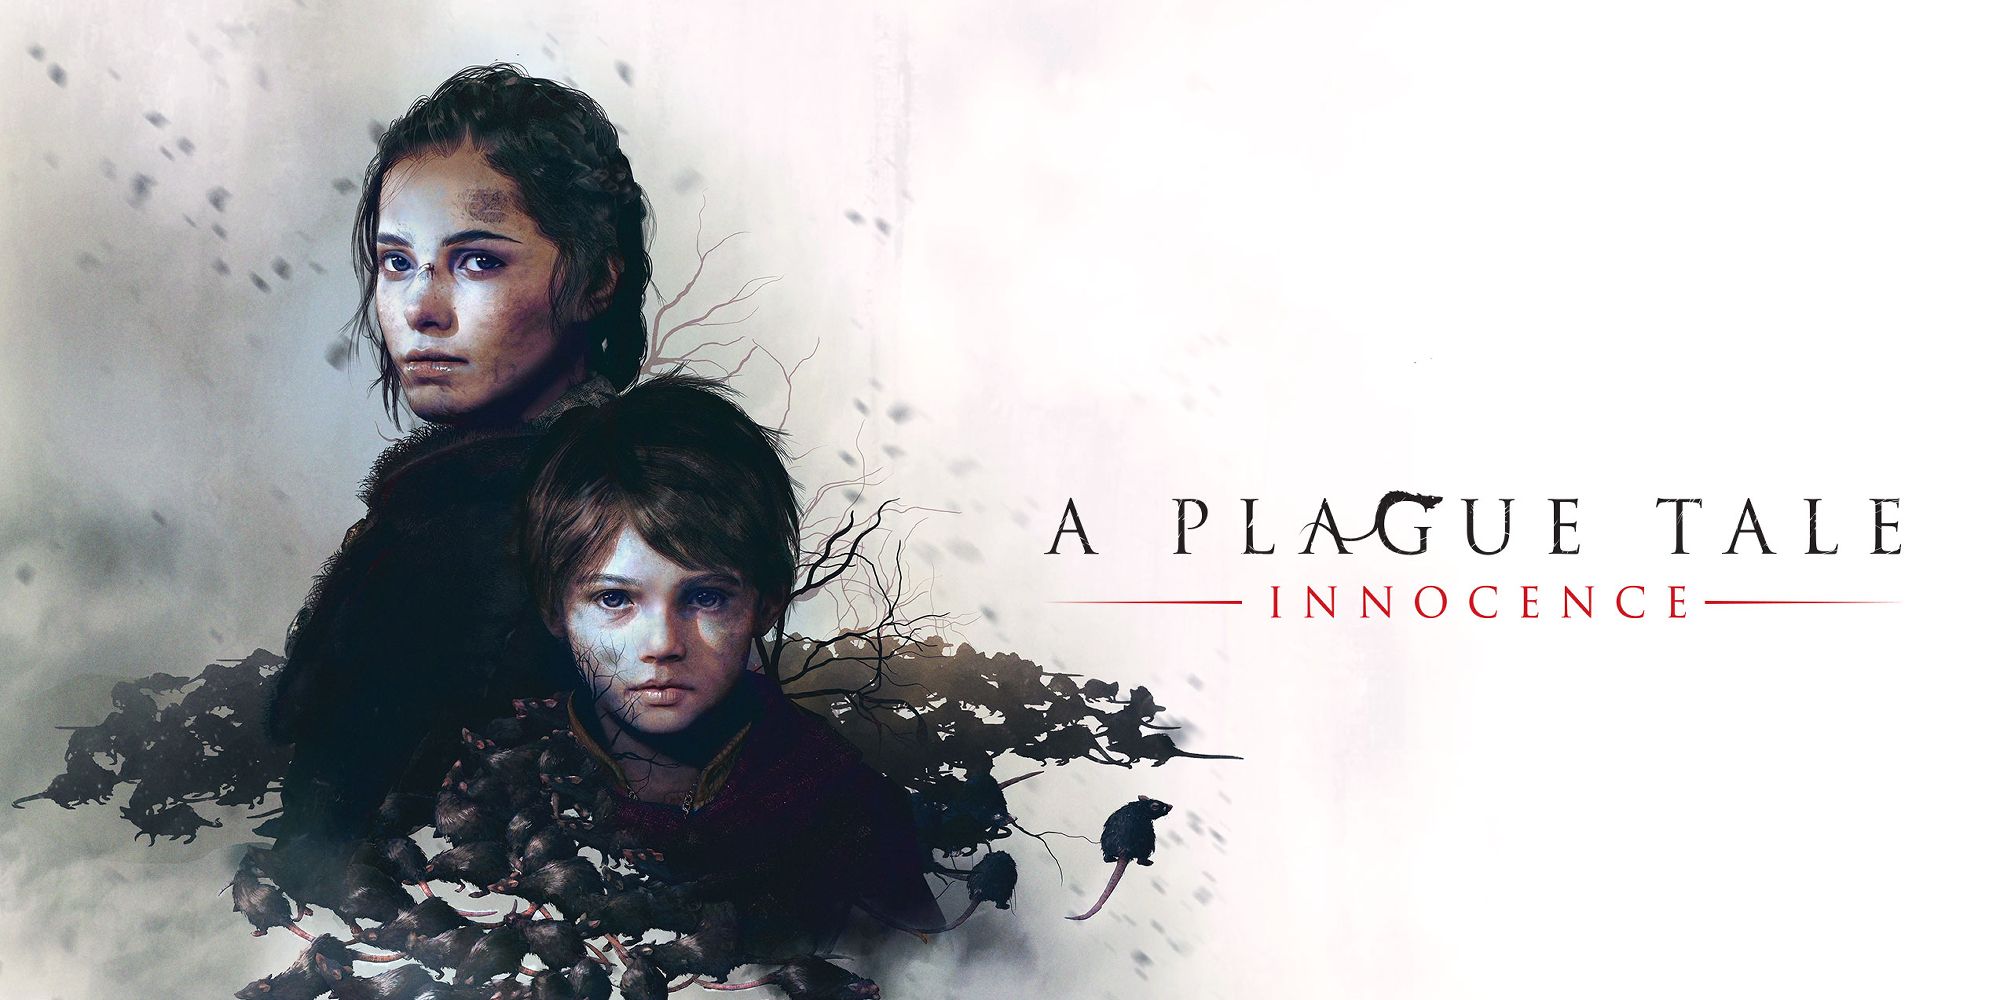 Plague story title art